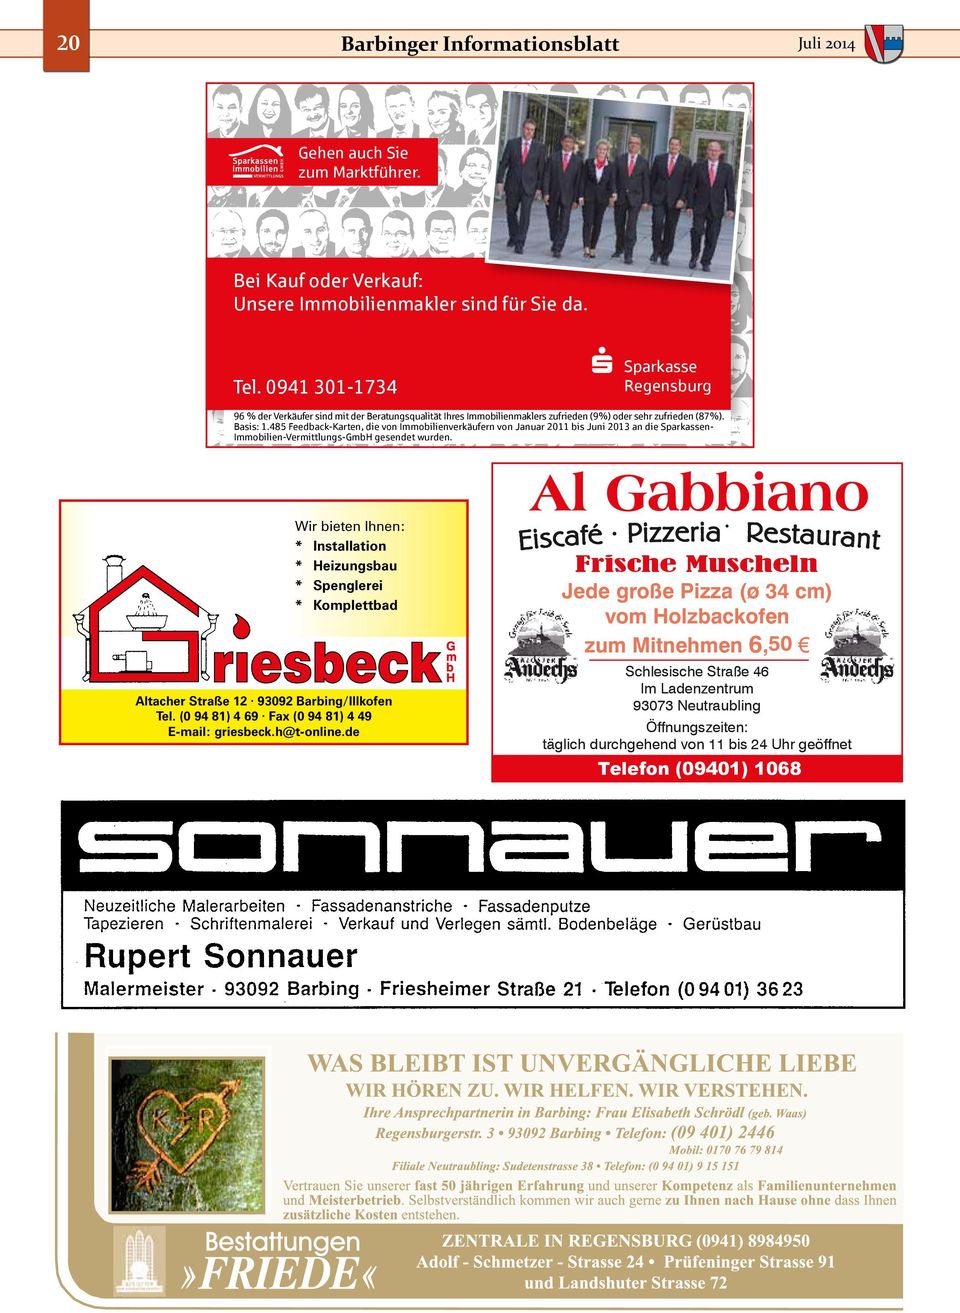 485 Feedback-Karten, die von Immobilienverkäufern von Januar 2011 bis Juni 2013 an die Sparkassen- Immobilien-Vermittlungs-GmbH gesendet wurden.